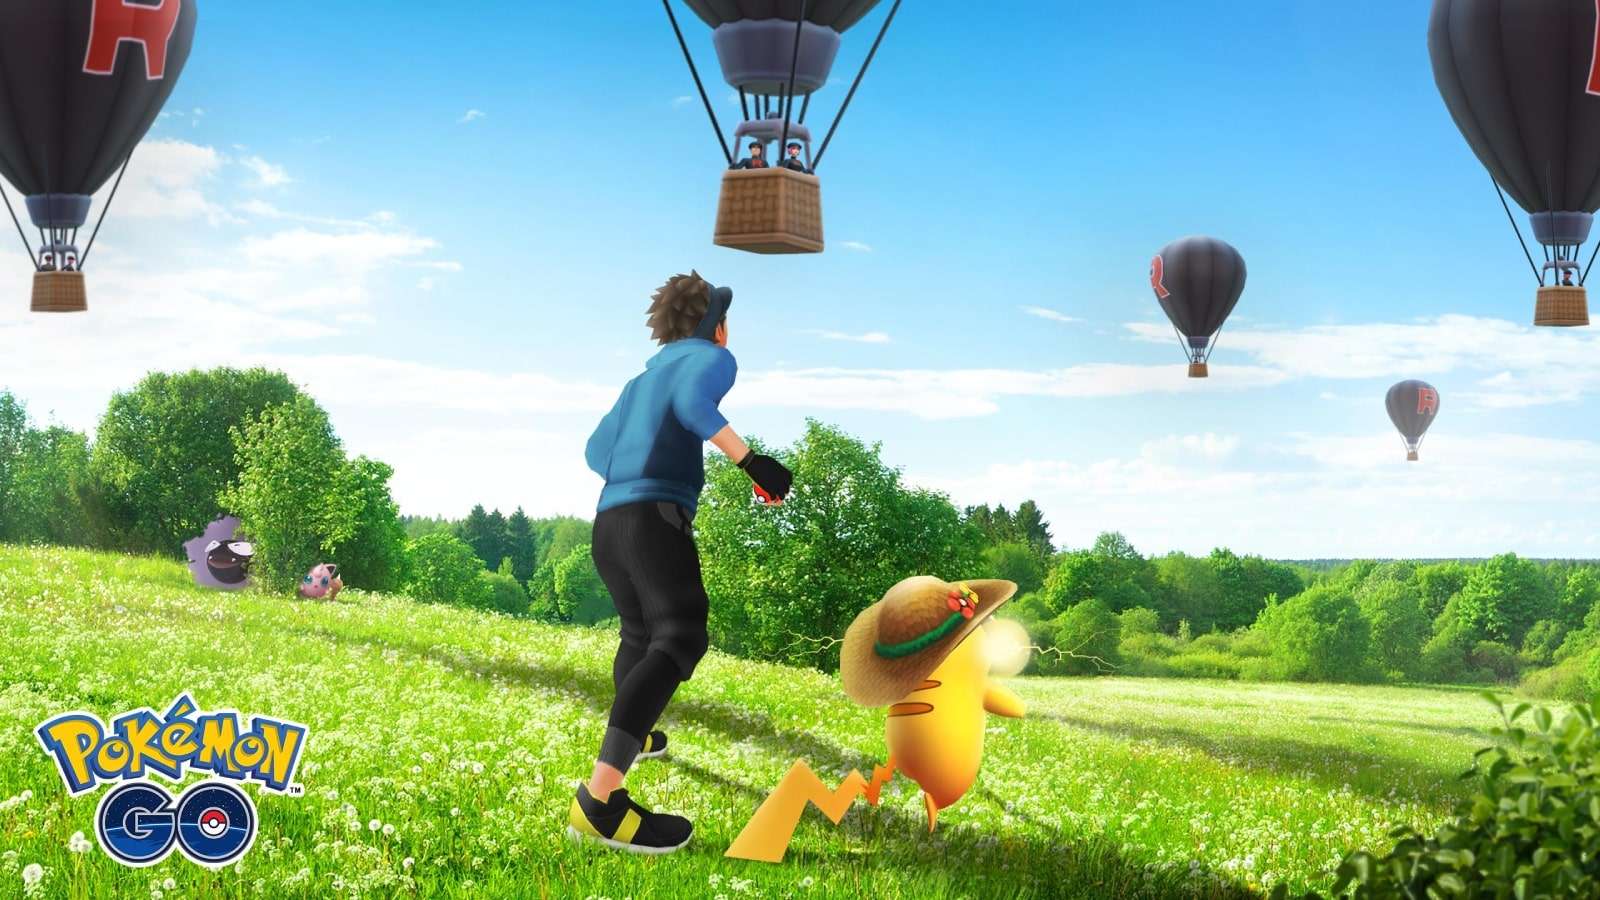 Pokemon Go team rocket Balloon invasion